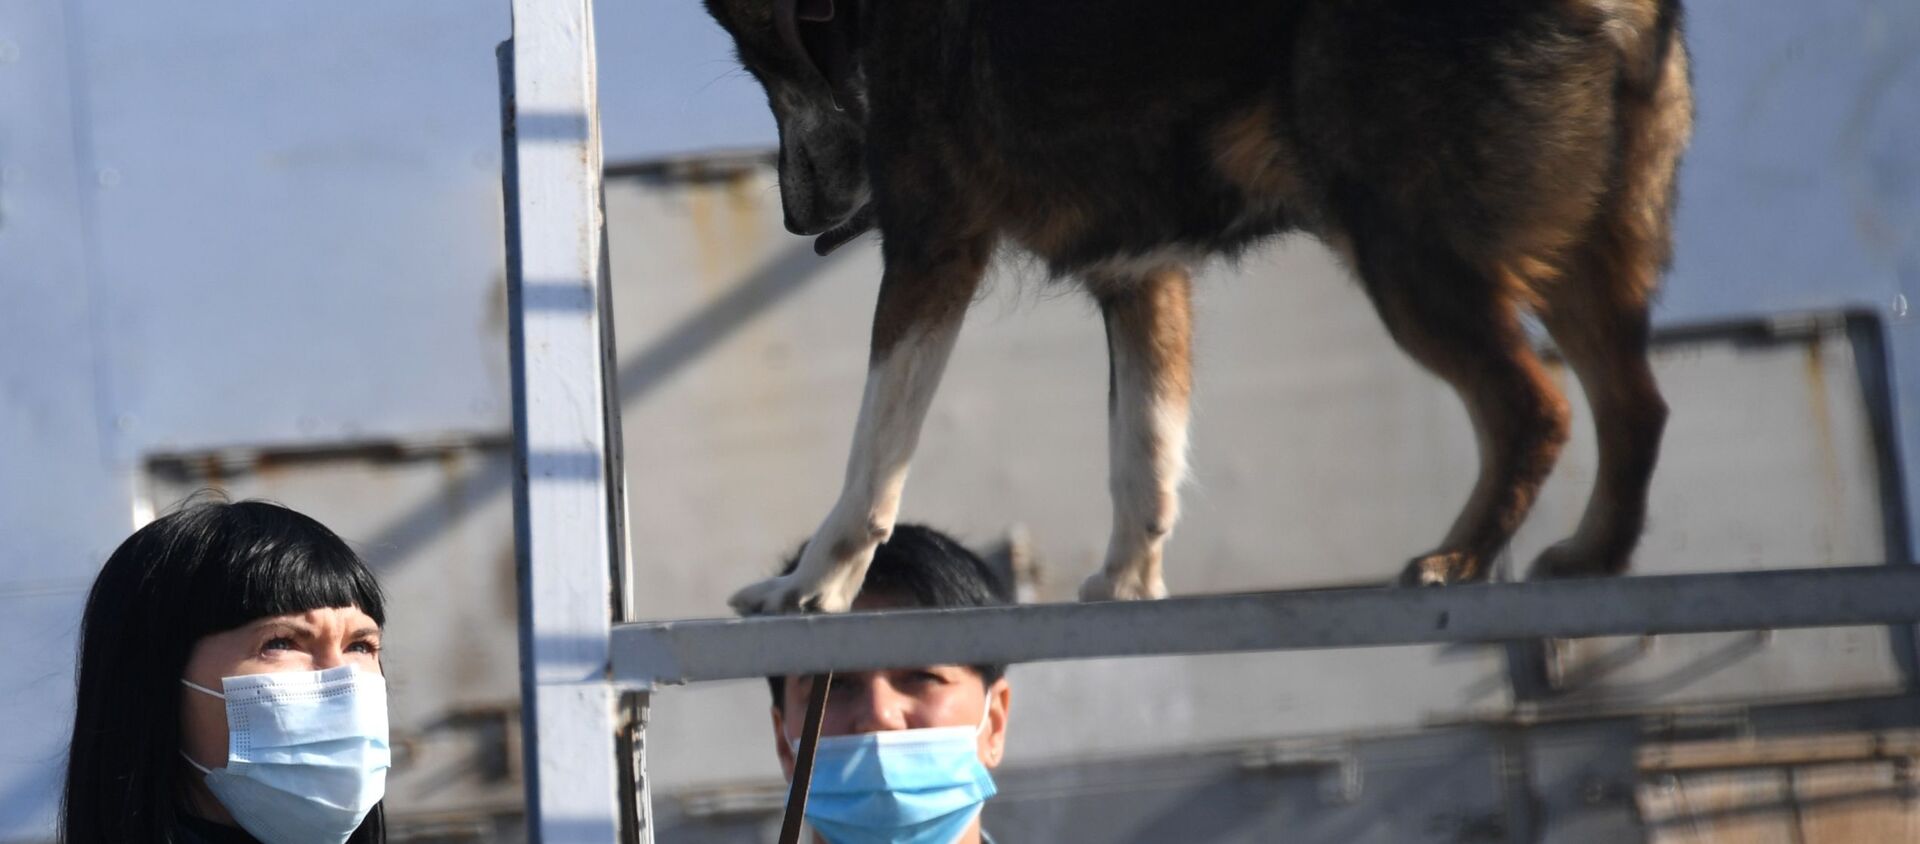 أخصائية الكلاب مع أحد كلاب الخدمة من سلالة سوليموف في قسم كلاب الشرطة في شركة الخطوط الجوية أيروفلوت في مطار شيريميتيفو، موسكو 2 أكتوبر 2020 - سبوتنيك عربي, 1920, 17.03.2021